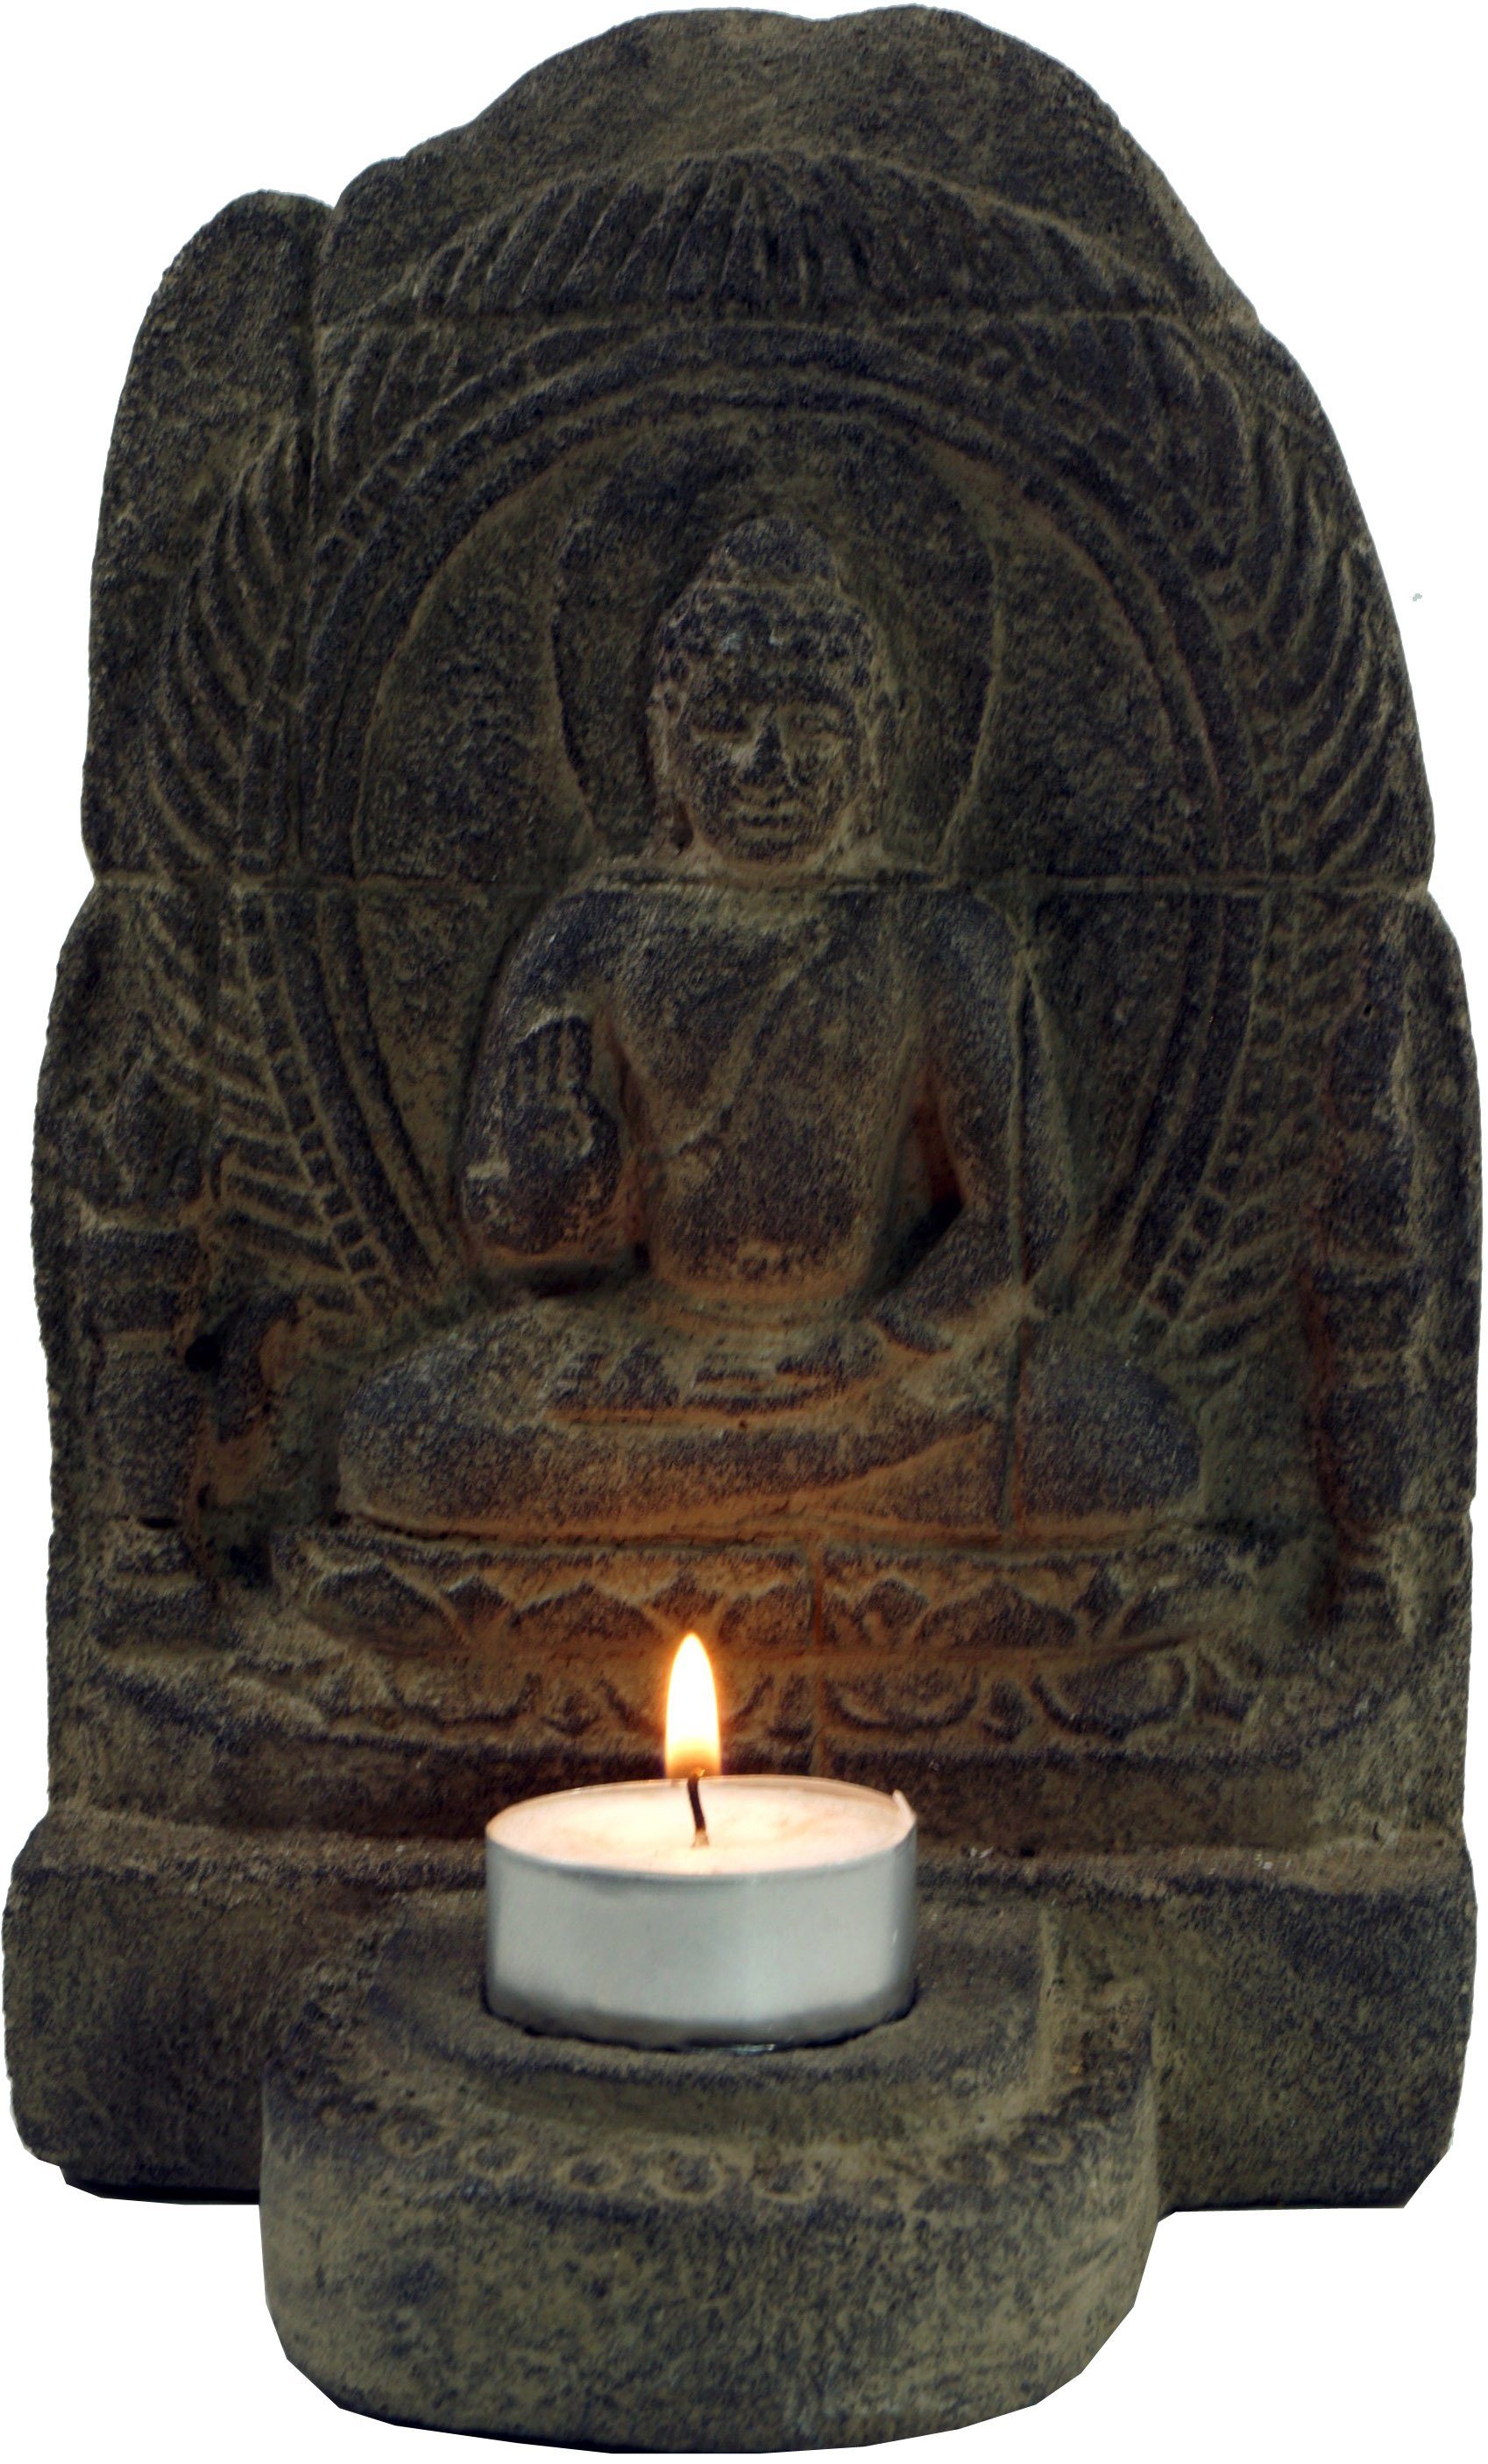 Guru-Shop Buddhafigur Minitempel, Stein Teelichthalter aus Buddhafigur